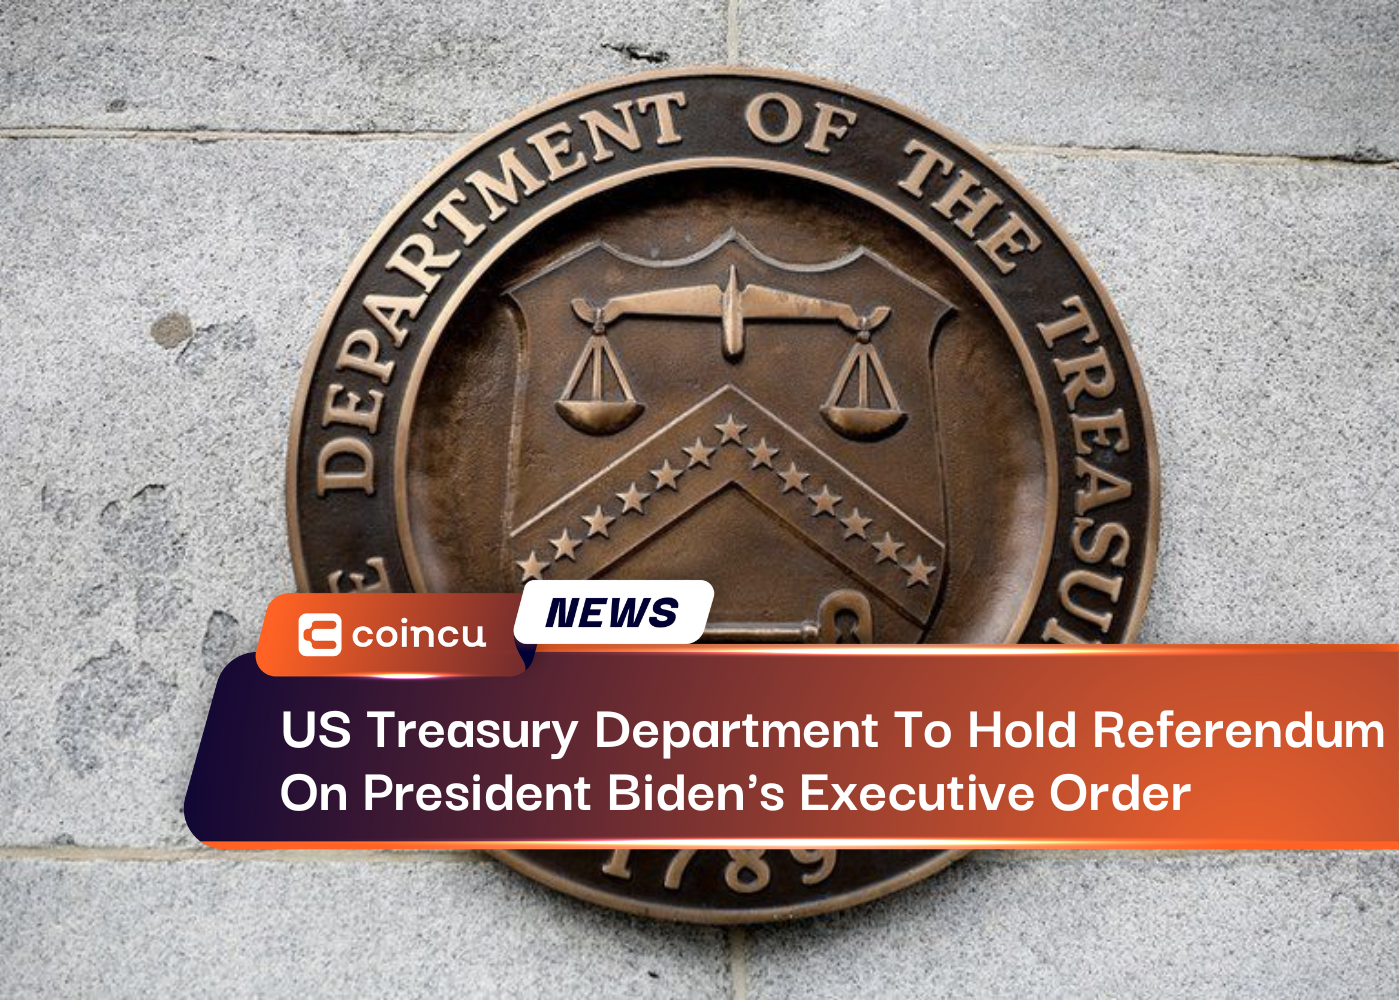 وزارة الخزانة الأمريكية تجري استفتاءً على الأمر التنفيذي للرئيس بايدن